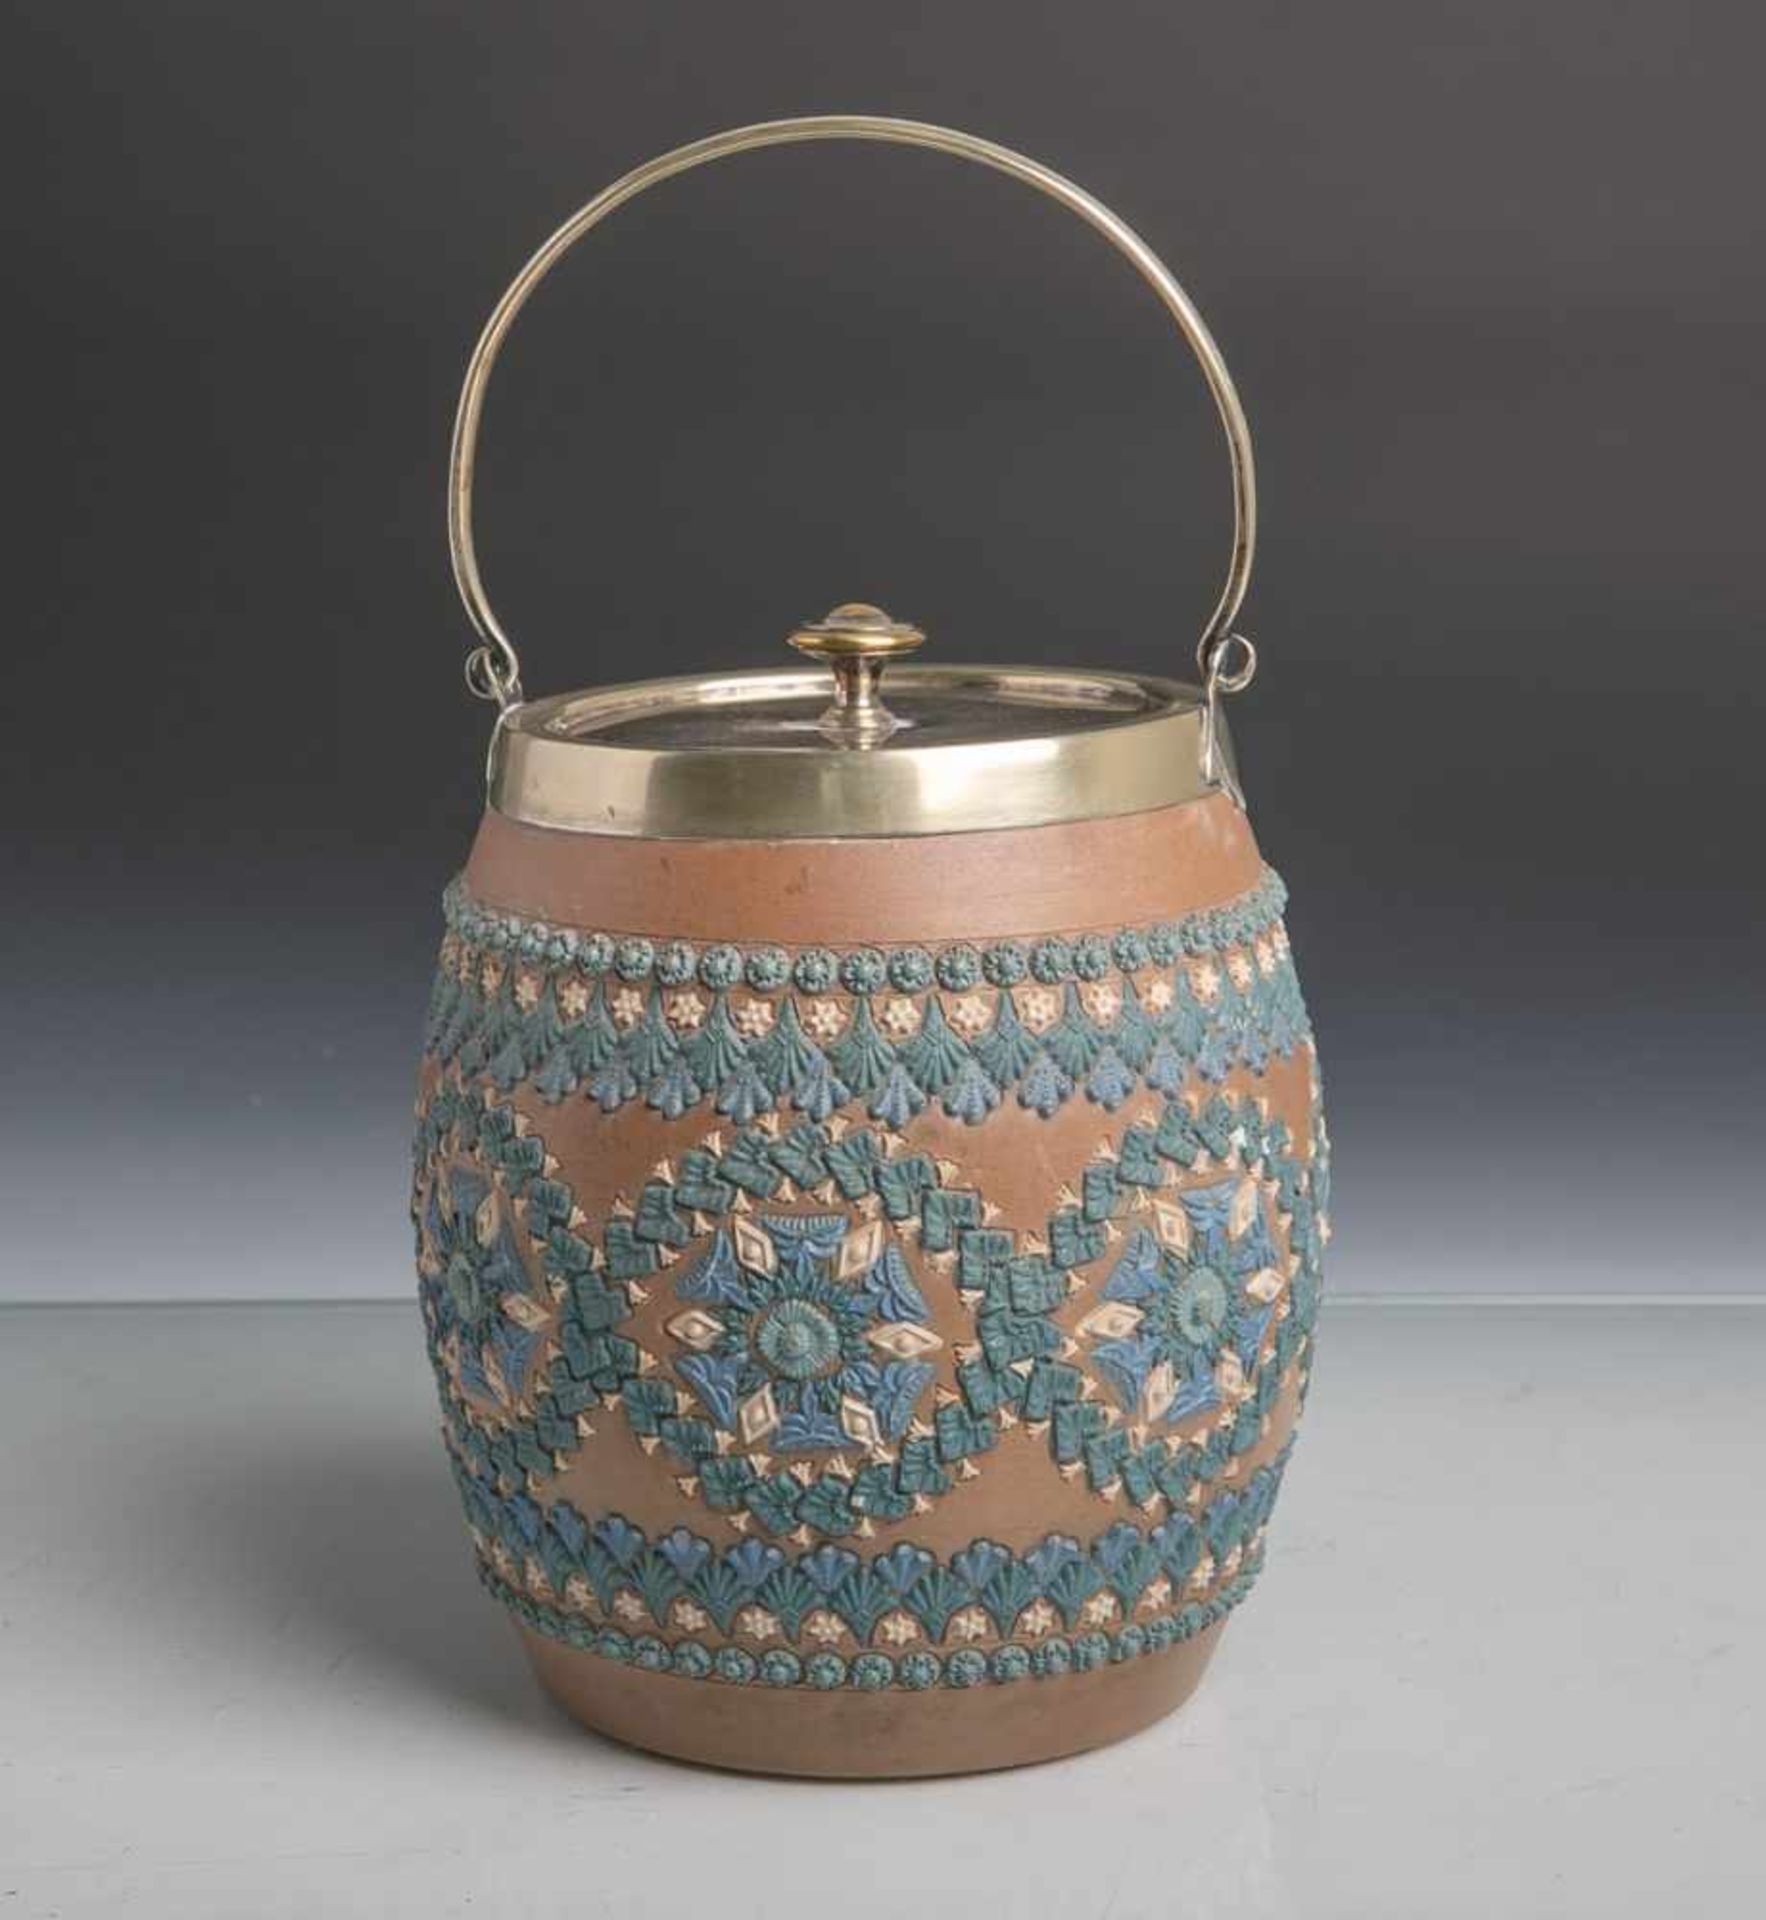 Eiswürfelbehälter aus Keramik (Doulton Silicon Lambeth, Unterbodenstempel, England, 1881),brauner